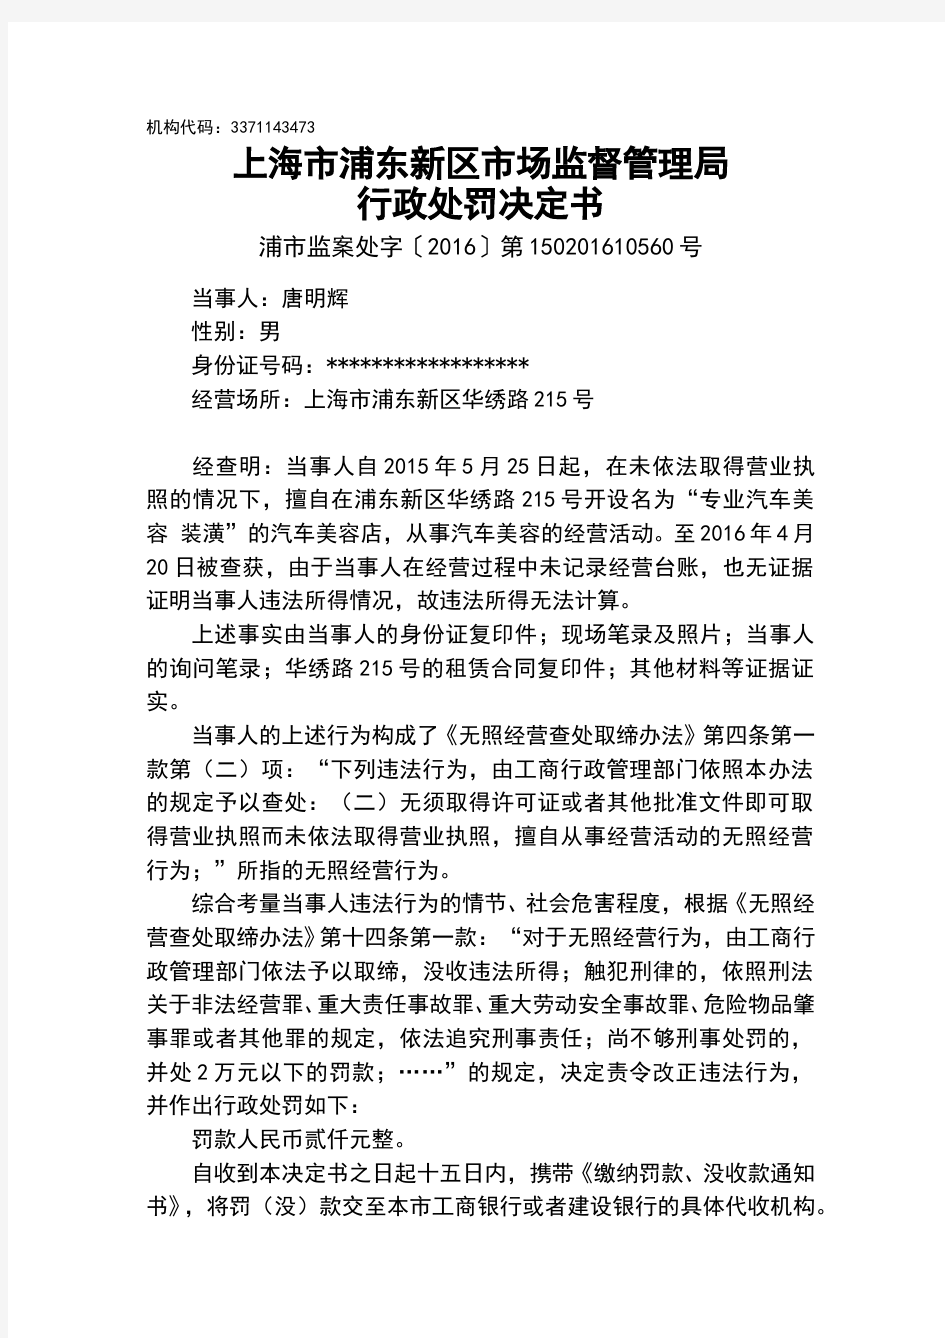 上海浦东新区场监督管理局行政处罚决定书